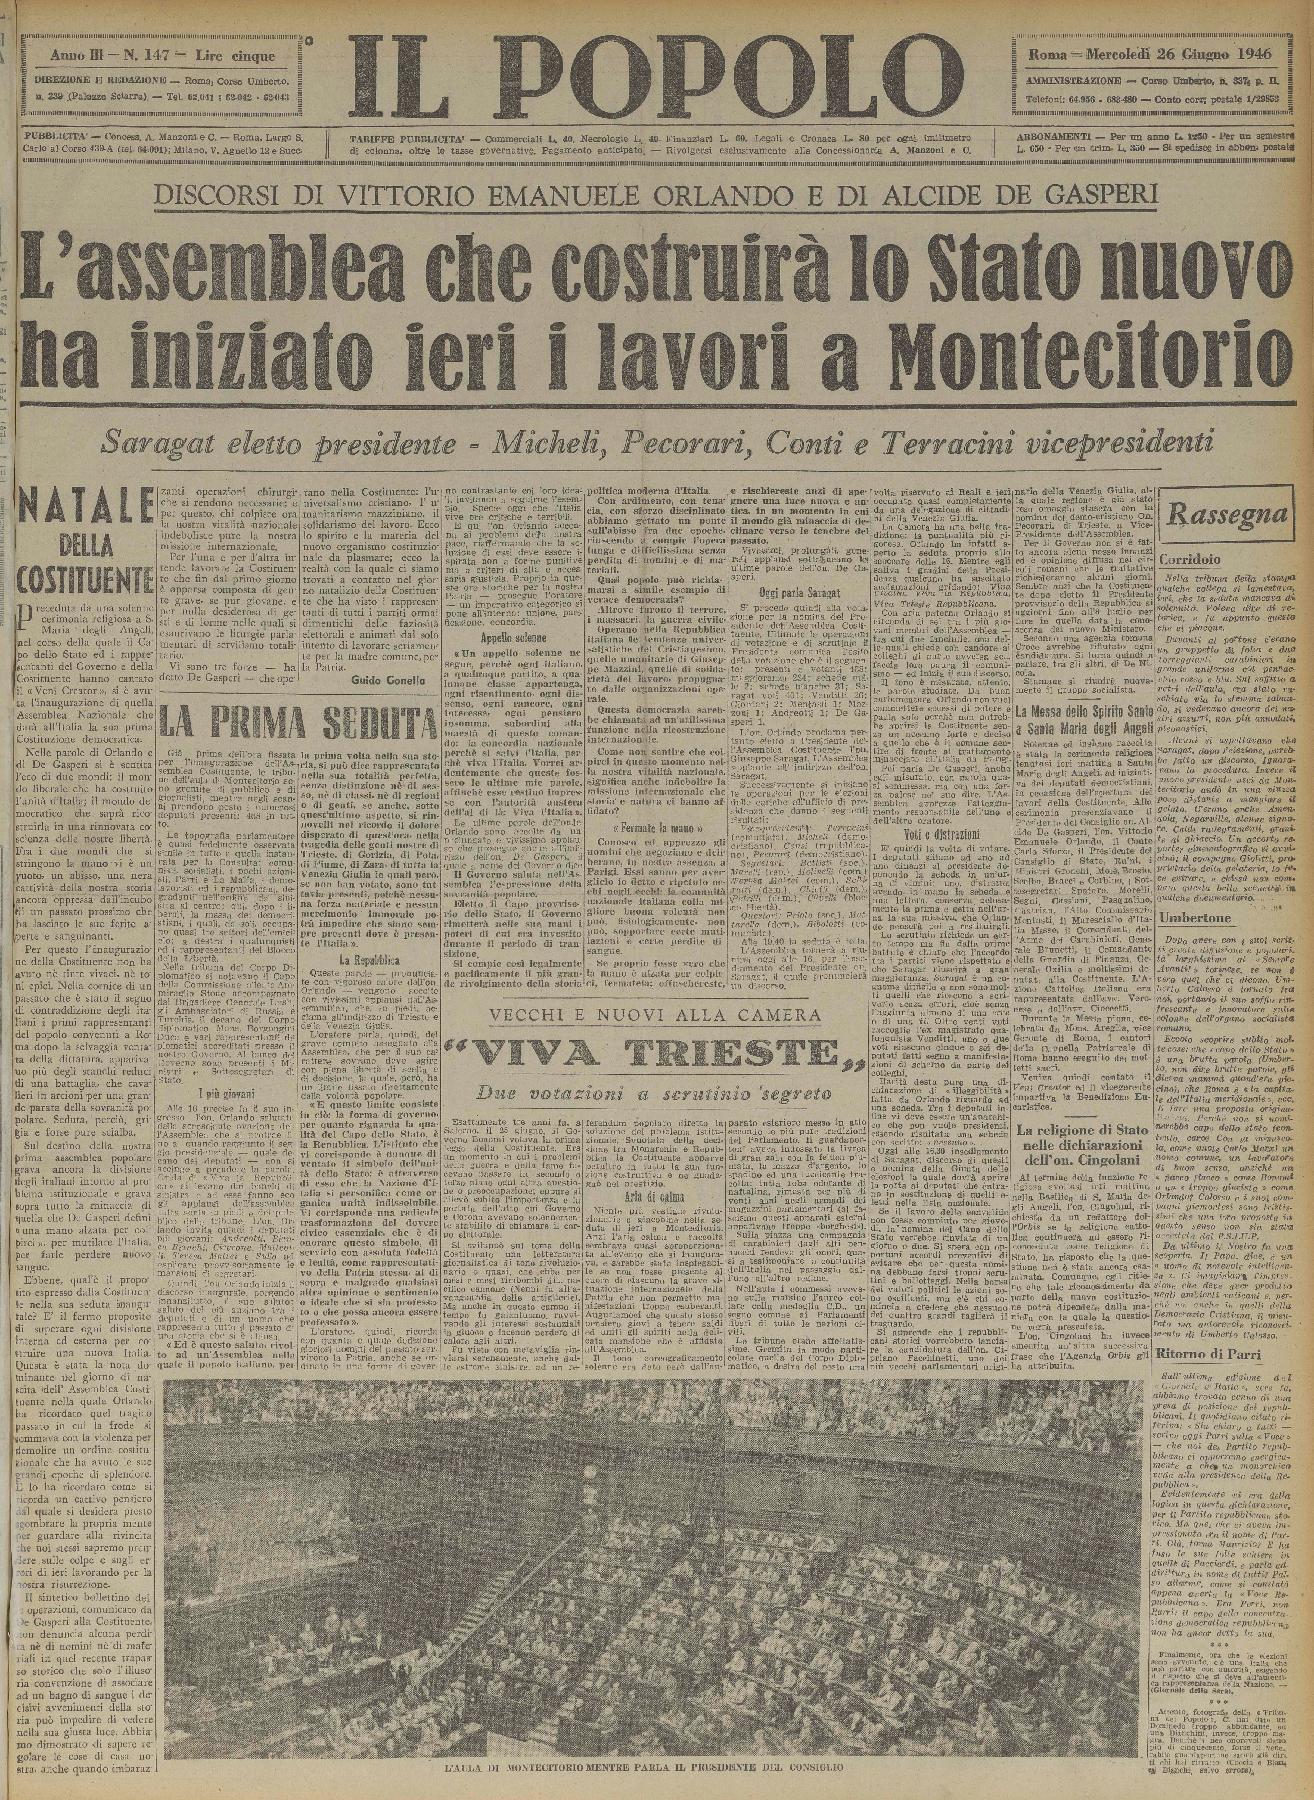 26 giugno 1946 - Prima pagina del quotidiano "Il Popolo".